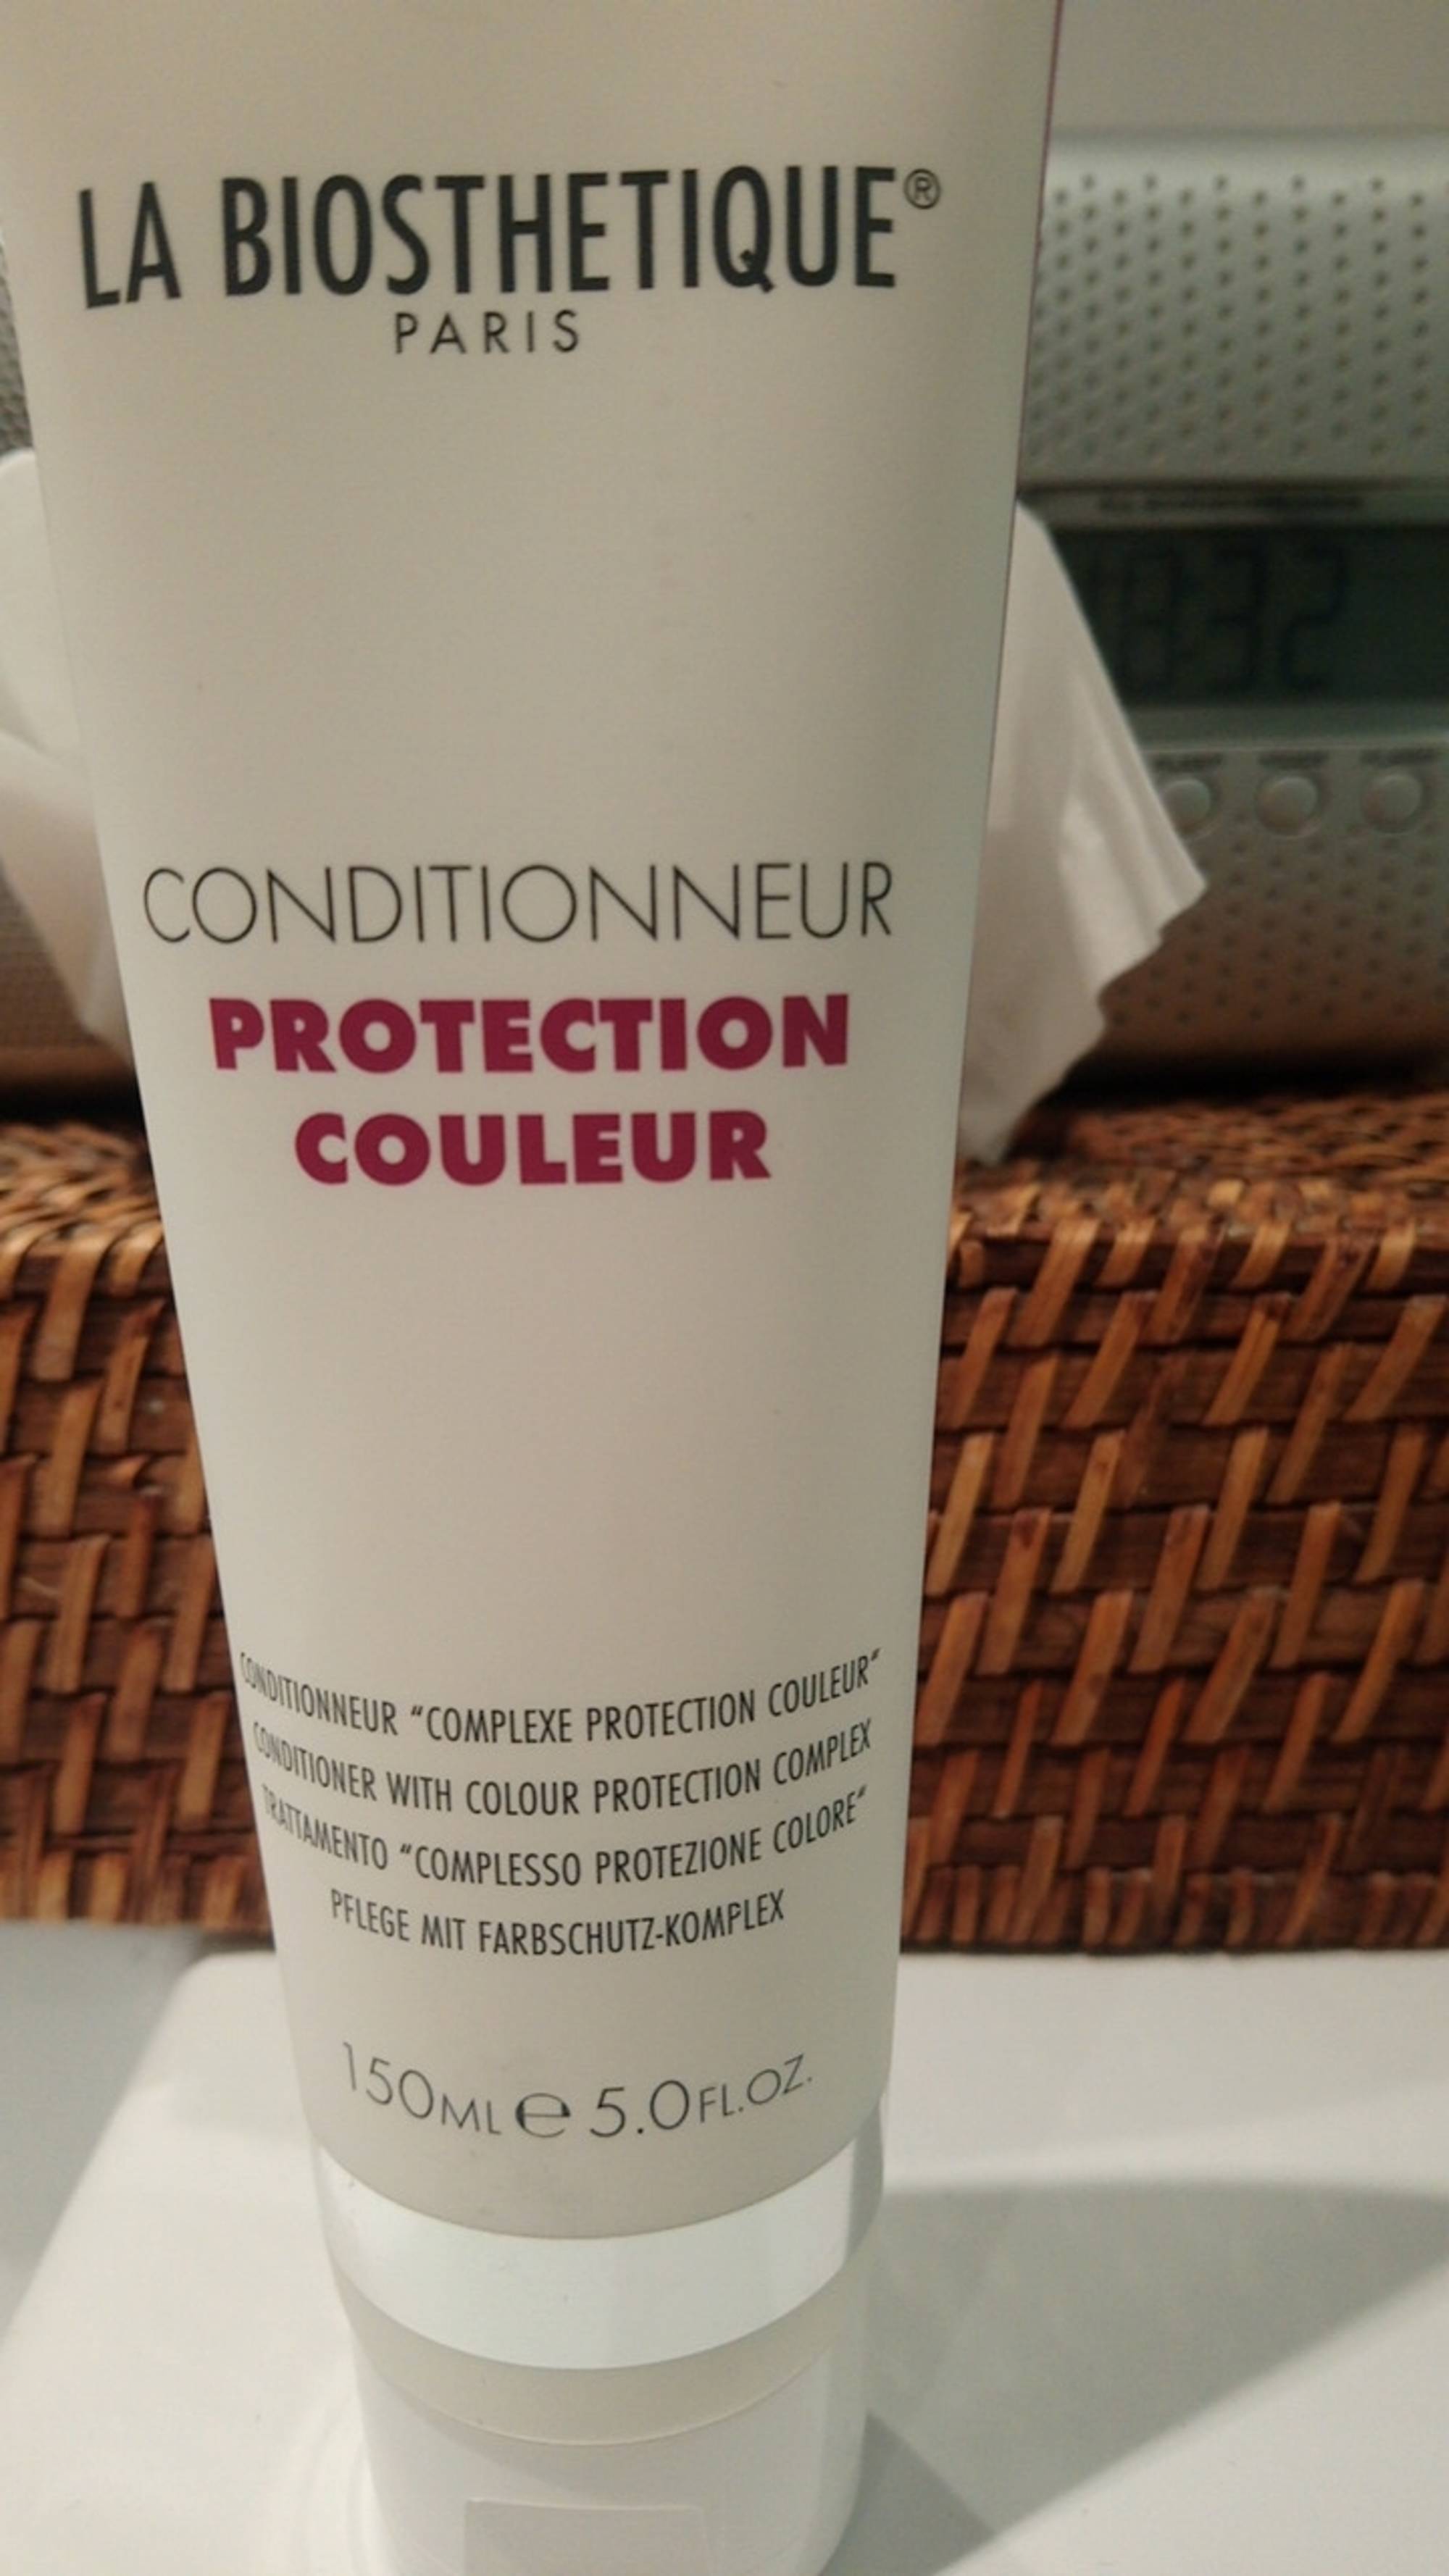 LA BIOSTHETIQUE PARIS - Conditioneur - Protection couleur 